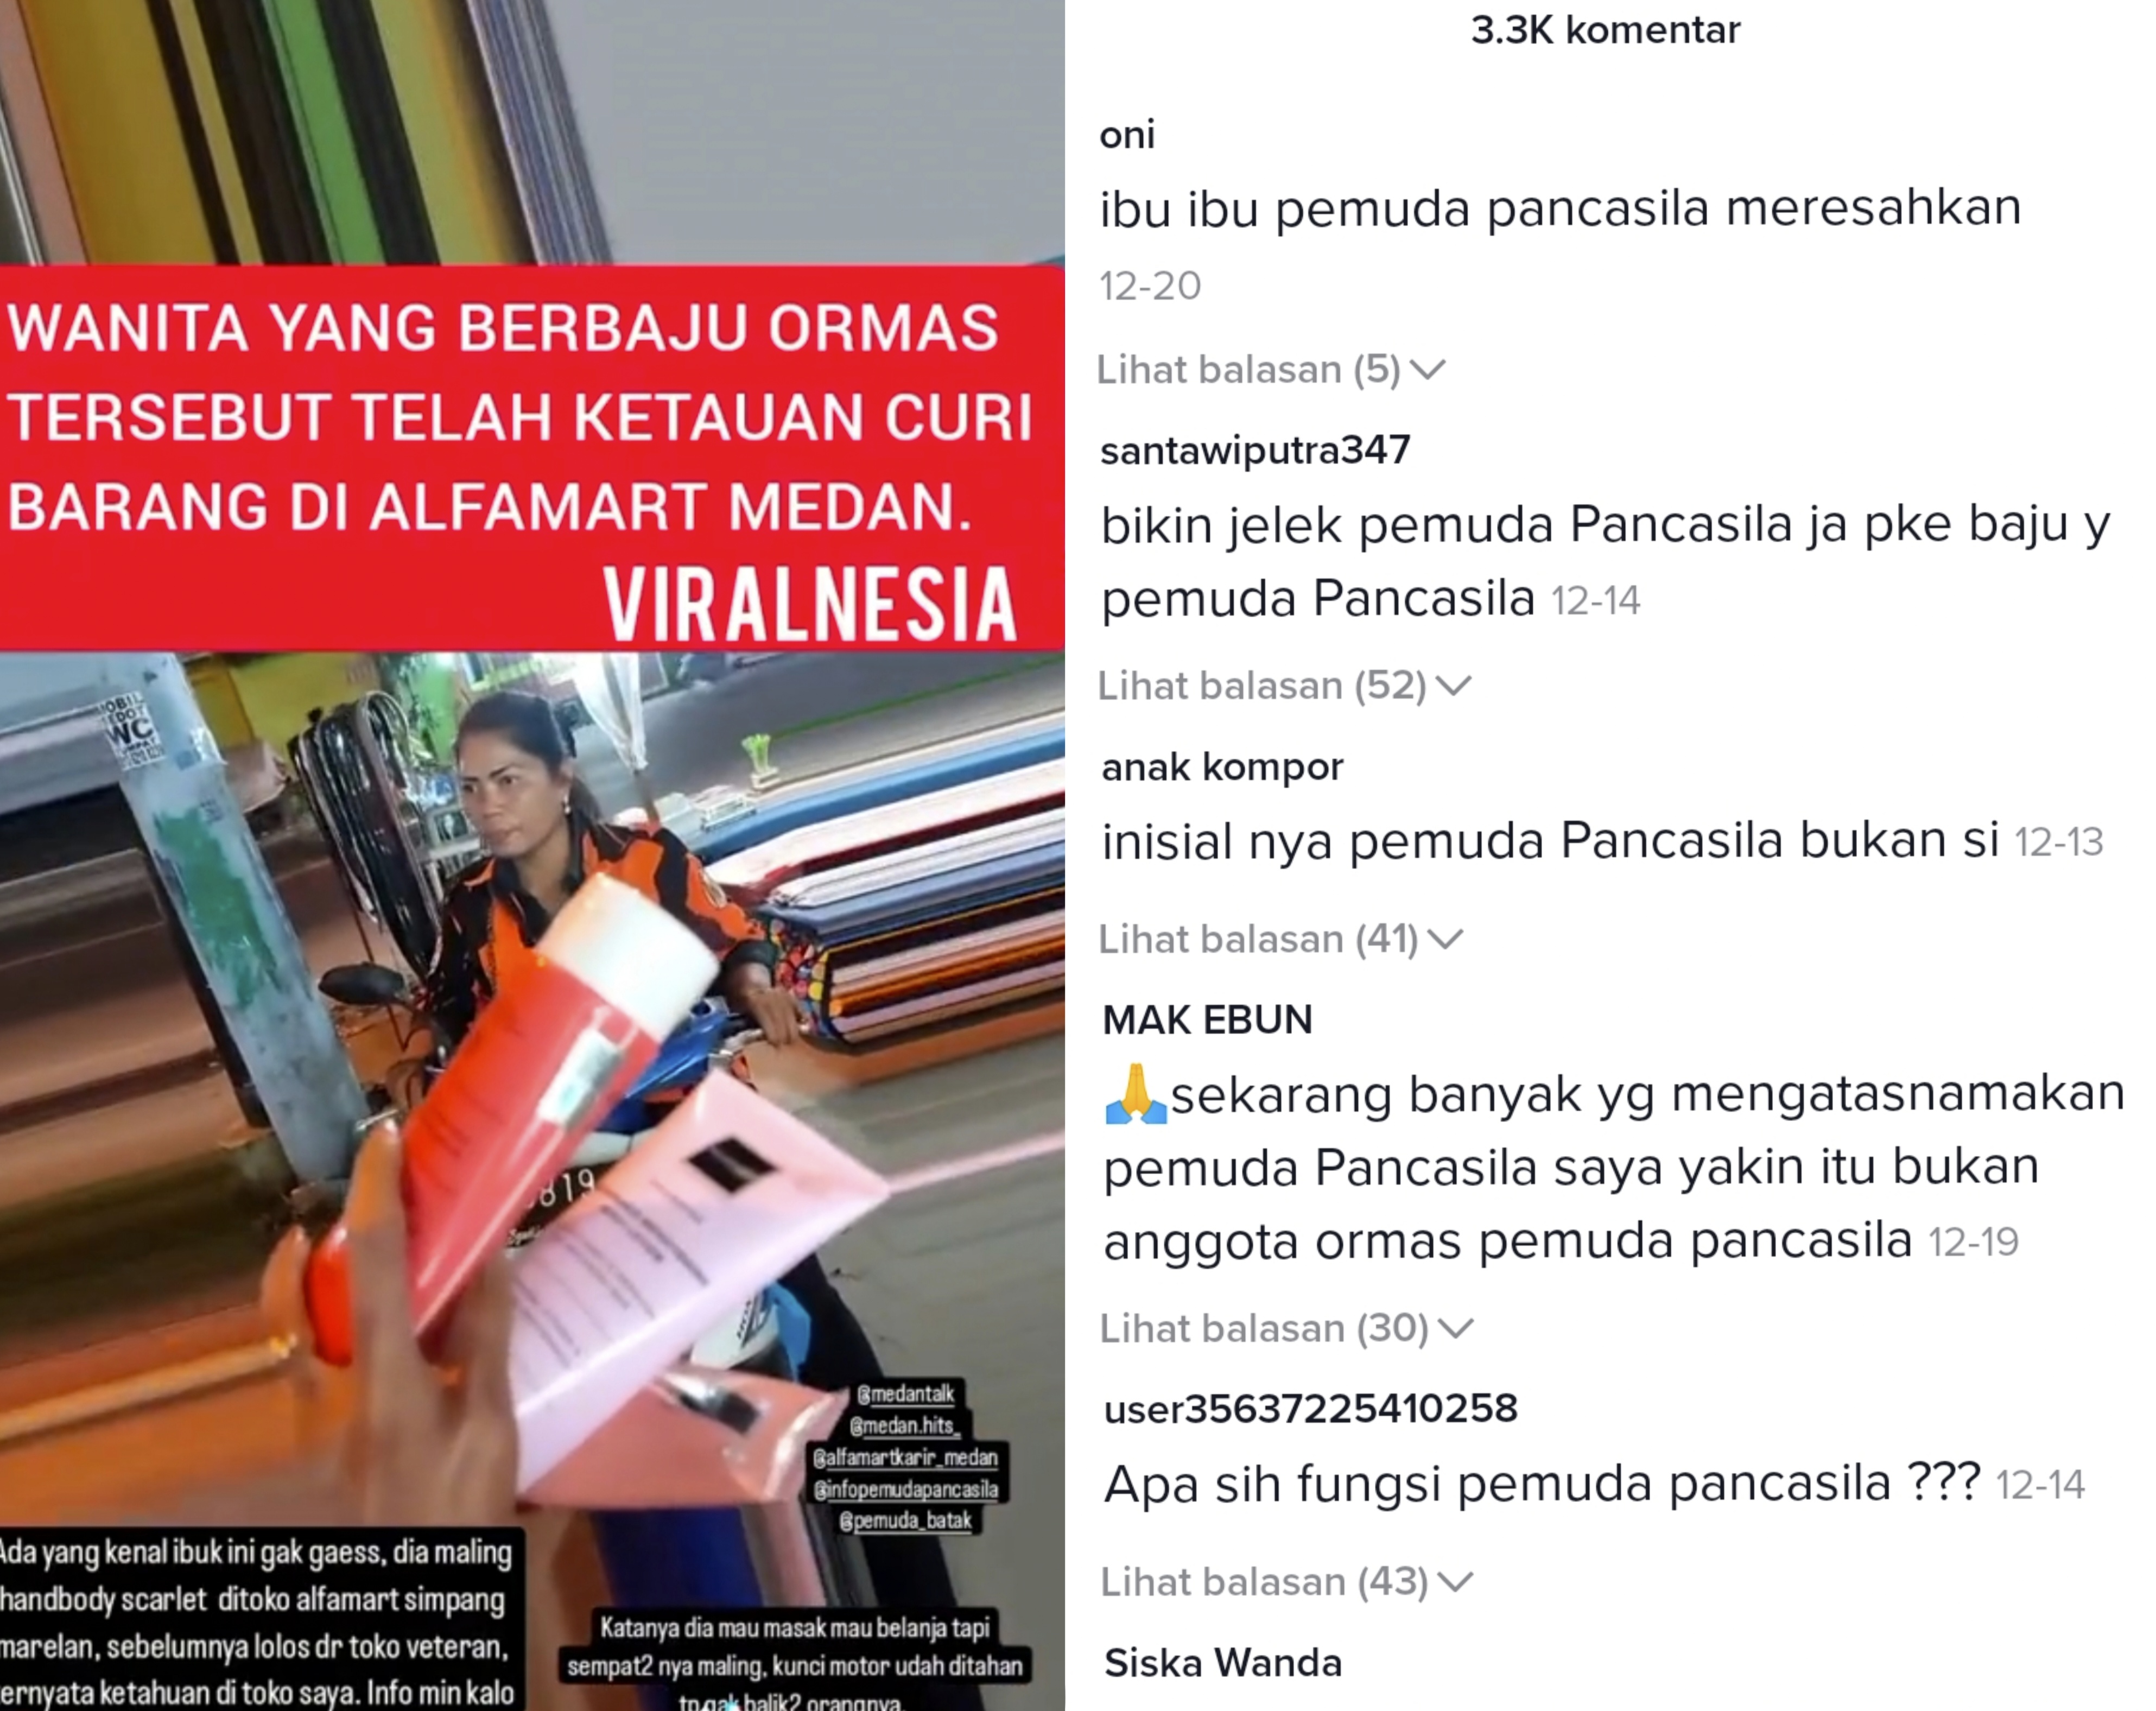 Ketahuan mencoba mencuri perawatan kulit!  Ibu-ibu yang berseragam Ormas berwarna oranye ini akhirnya dianiaya oleh netizen